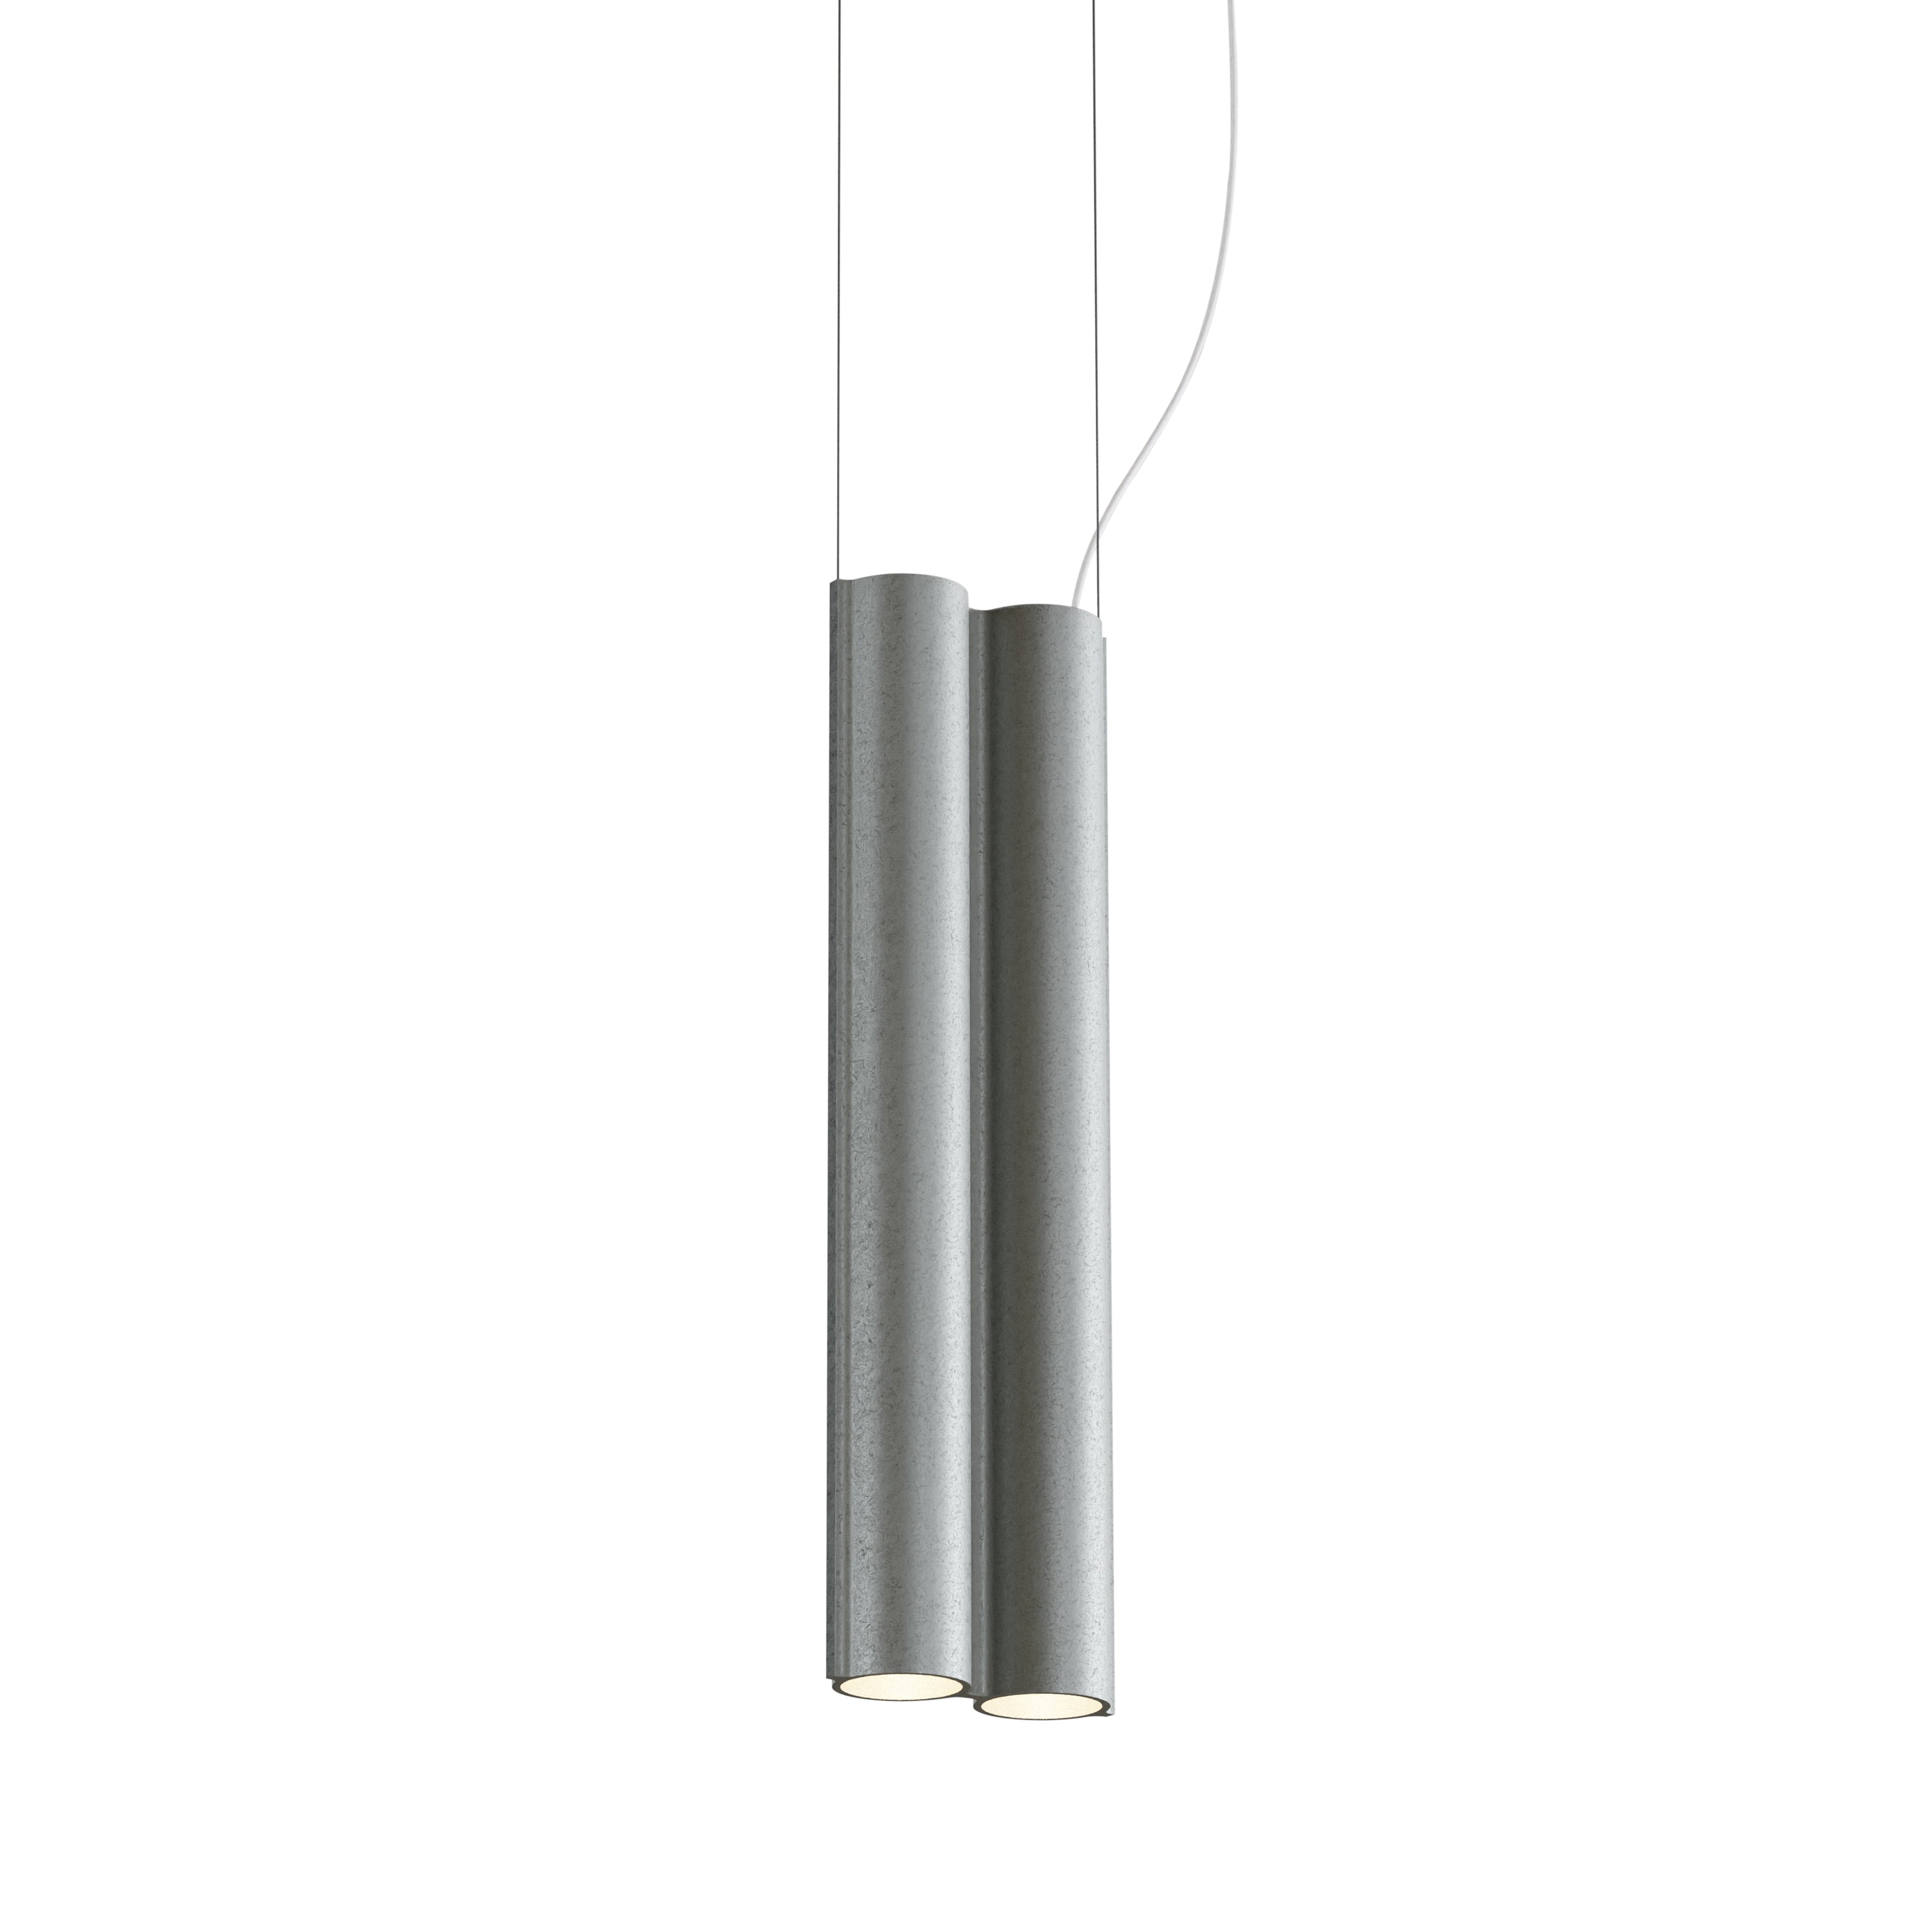 Silo 2SB Suspension Lamp: Tumbled Aluminum